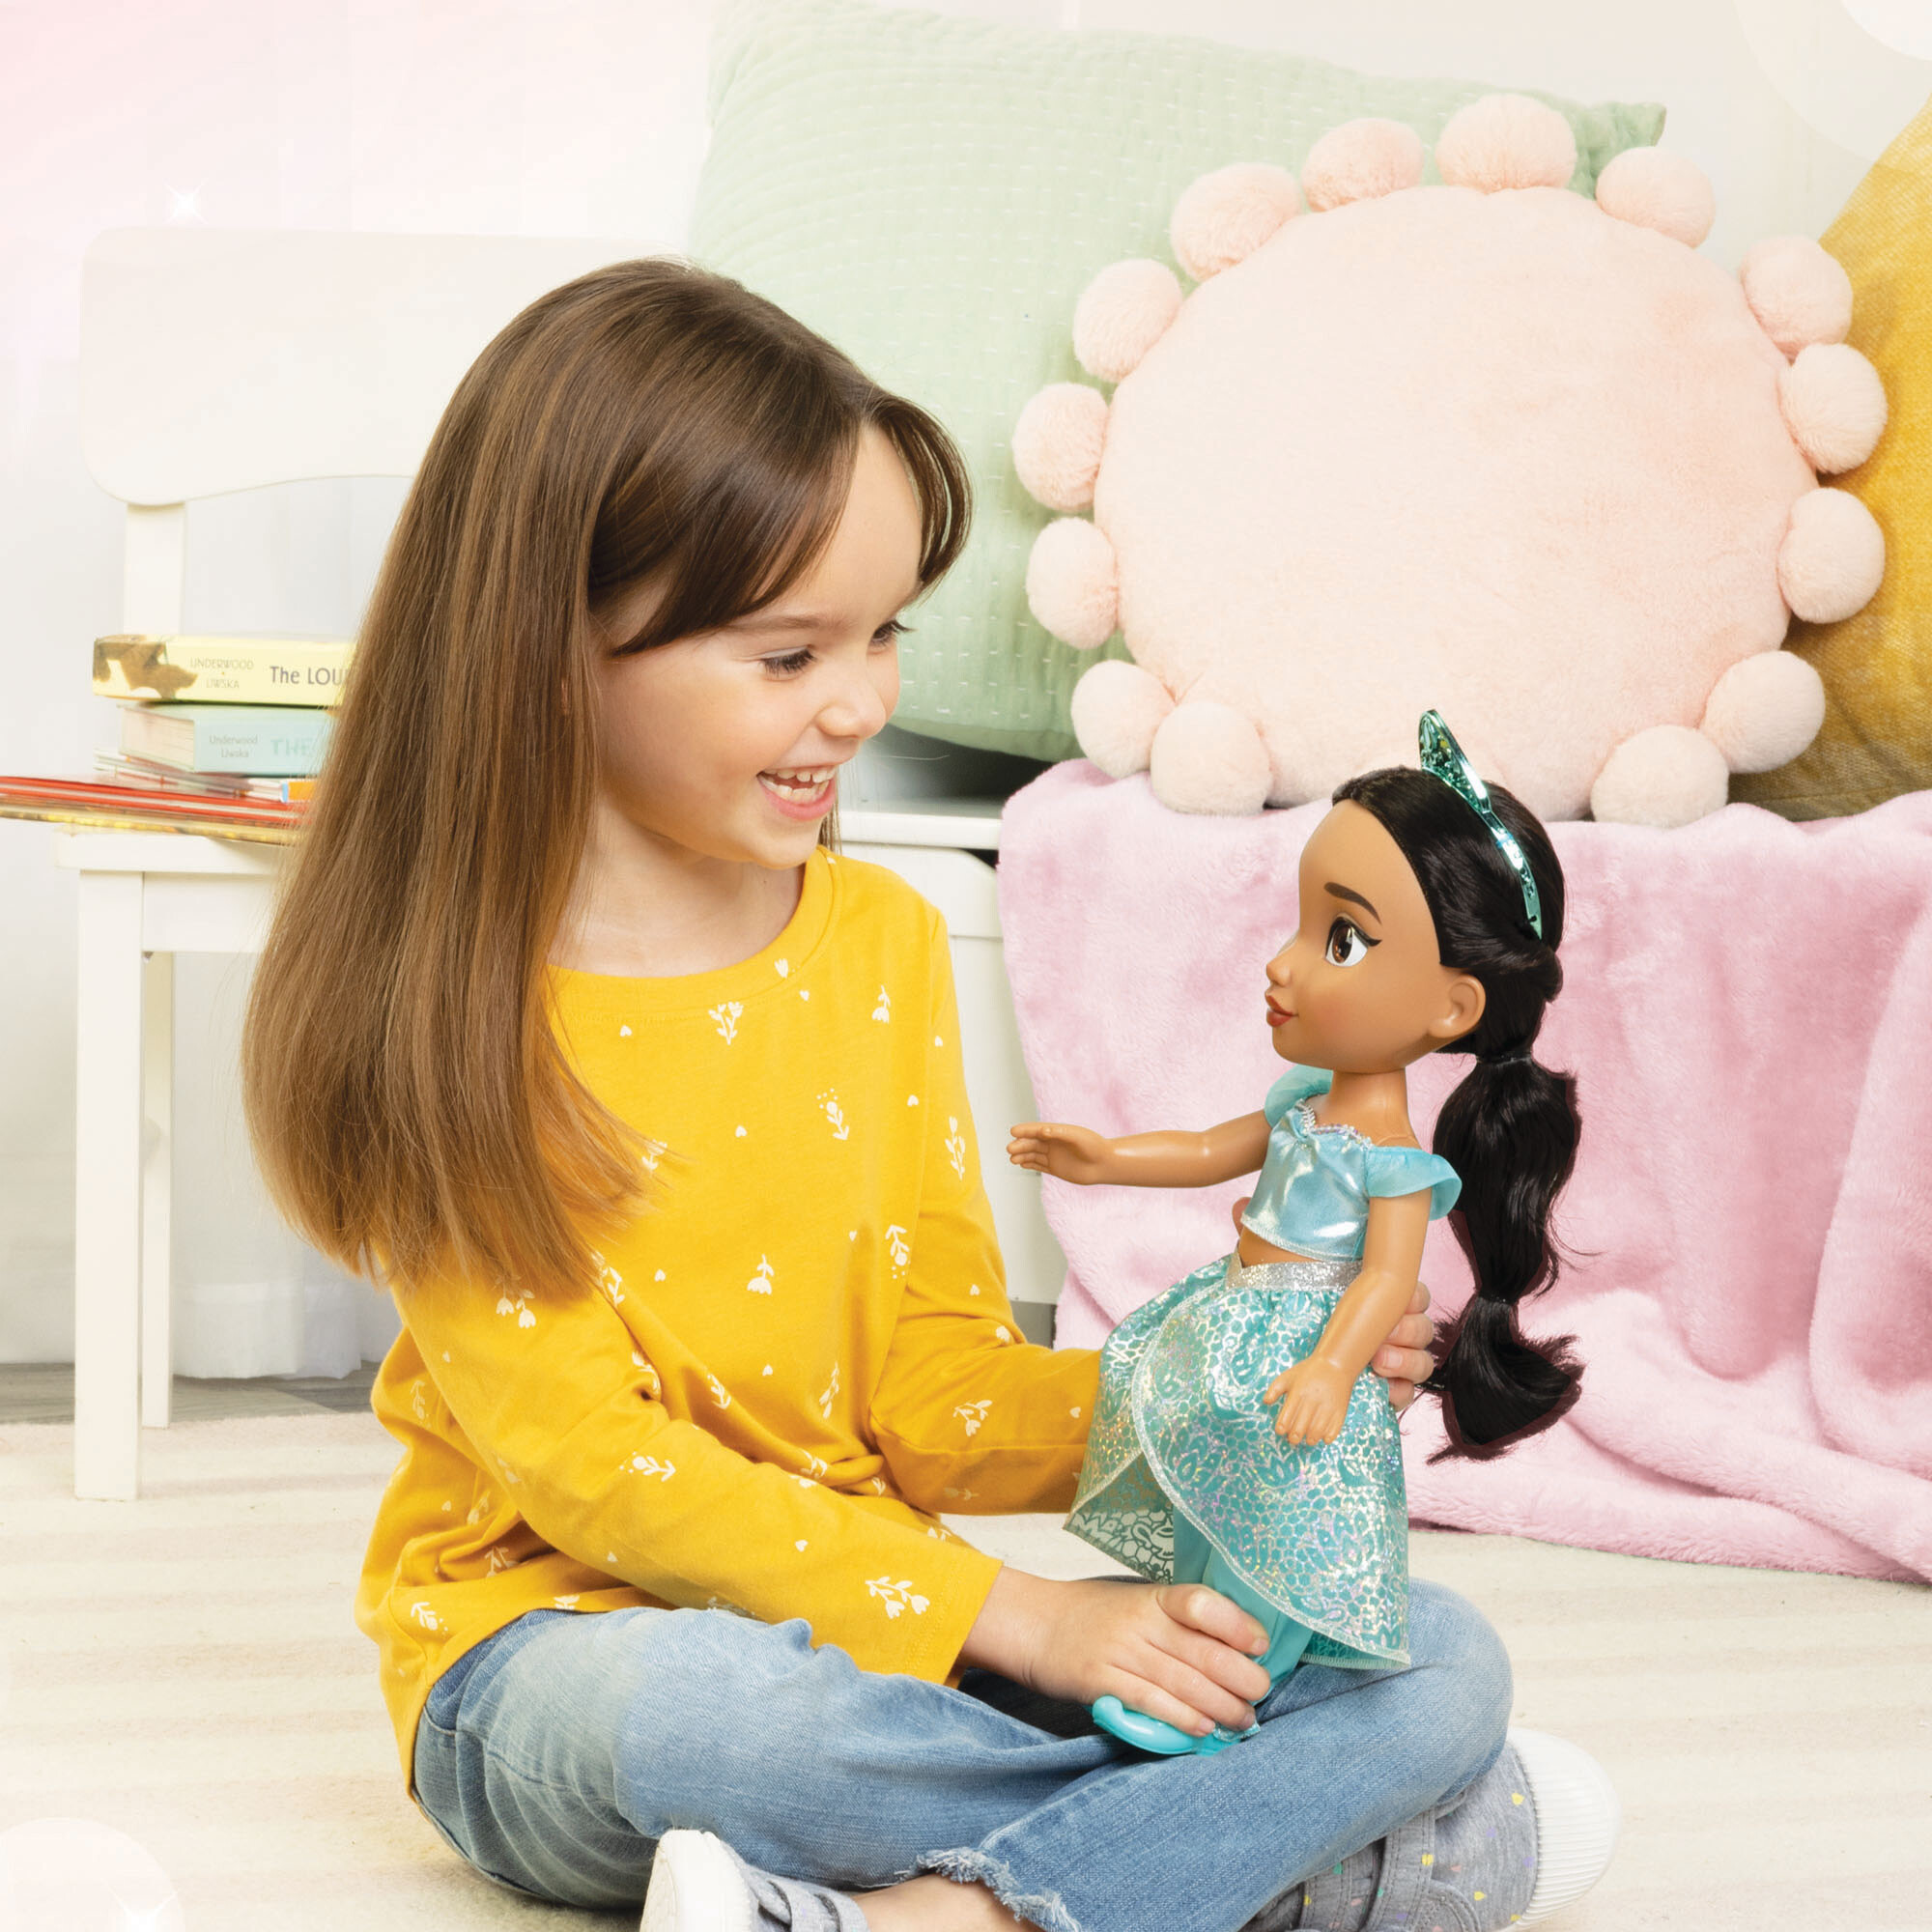 Disney Princess - Jasmine bambola con capi e accessori scintillanti  ispirati al film, giocattolo per bambini, HLW12 - Mattel - Bambole Fashion  - Giocattoli